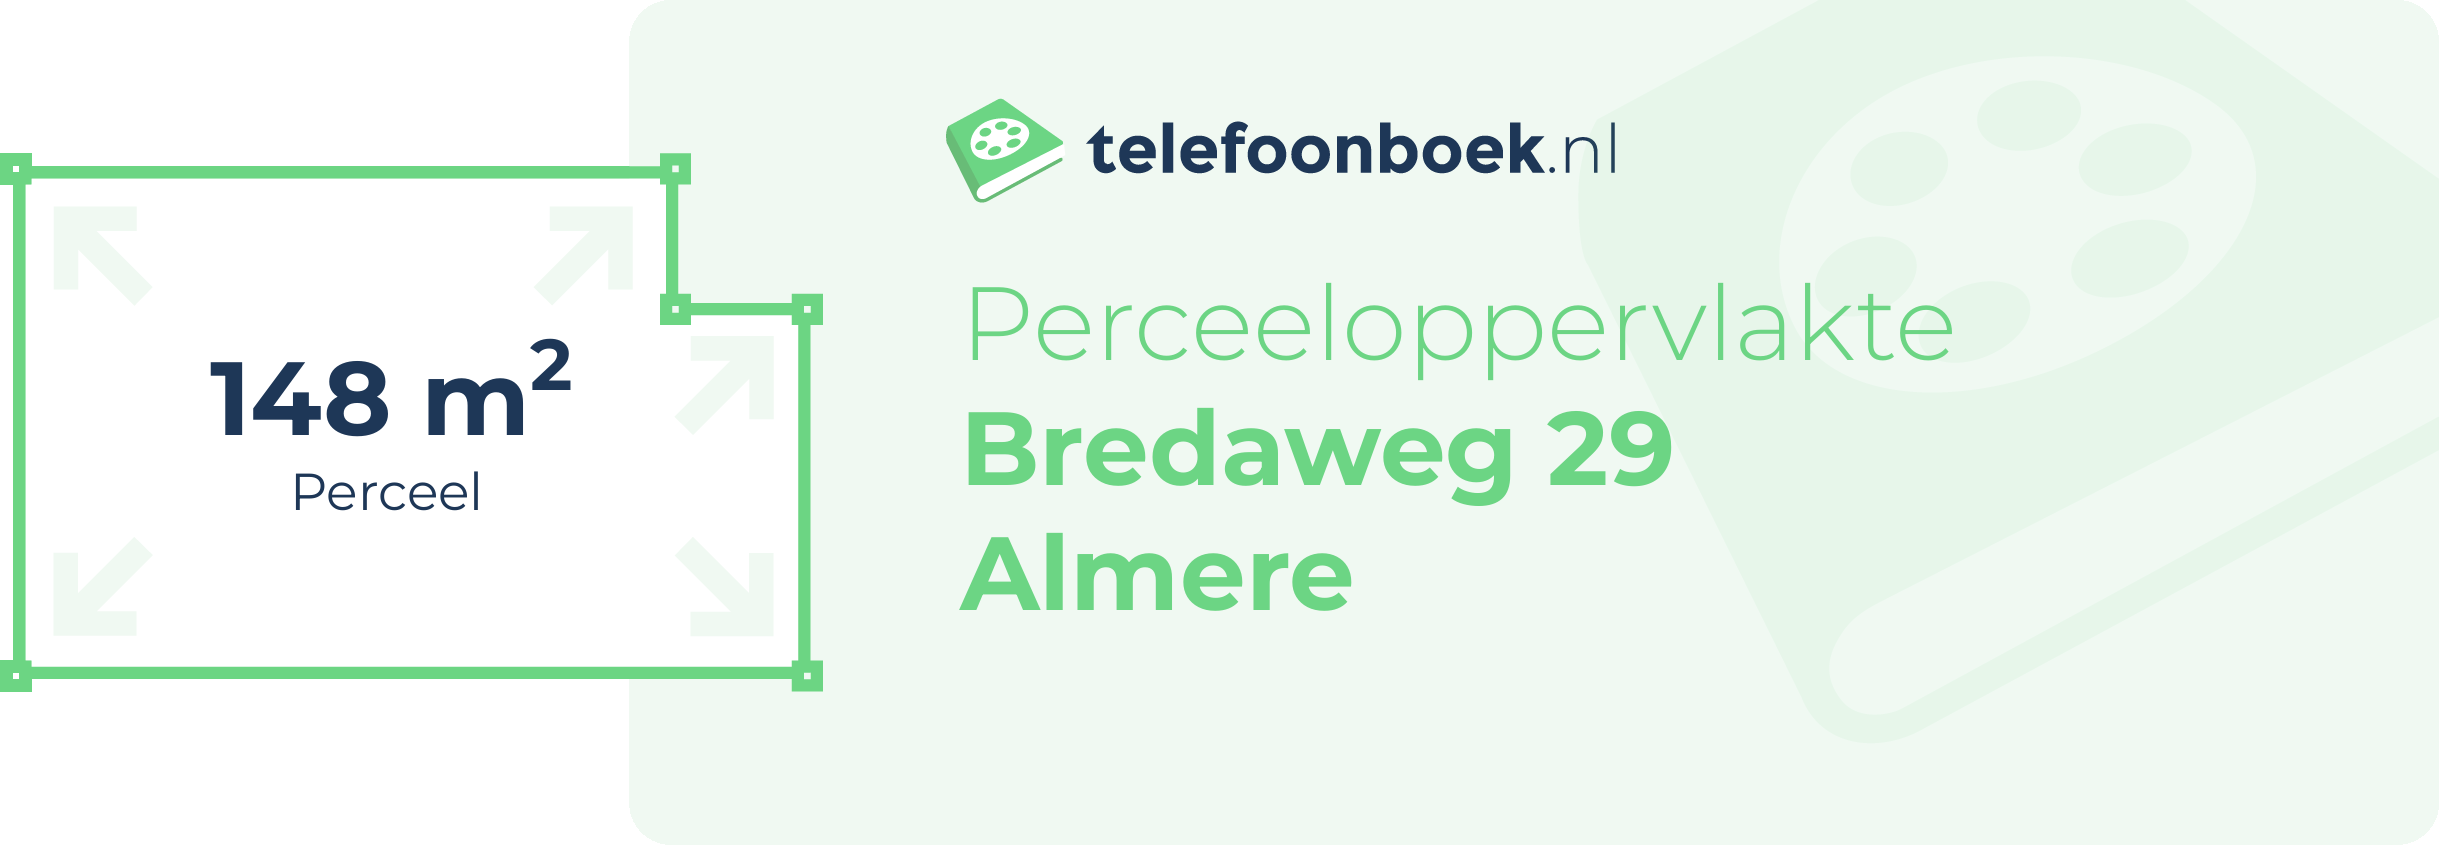 Perceeloppervlakte Bredaweg 29 Almere